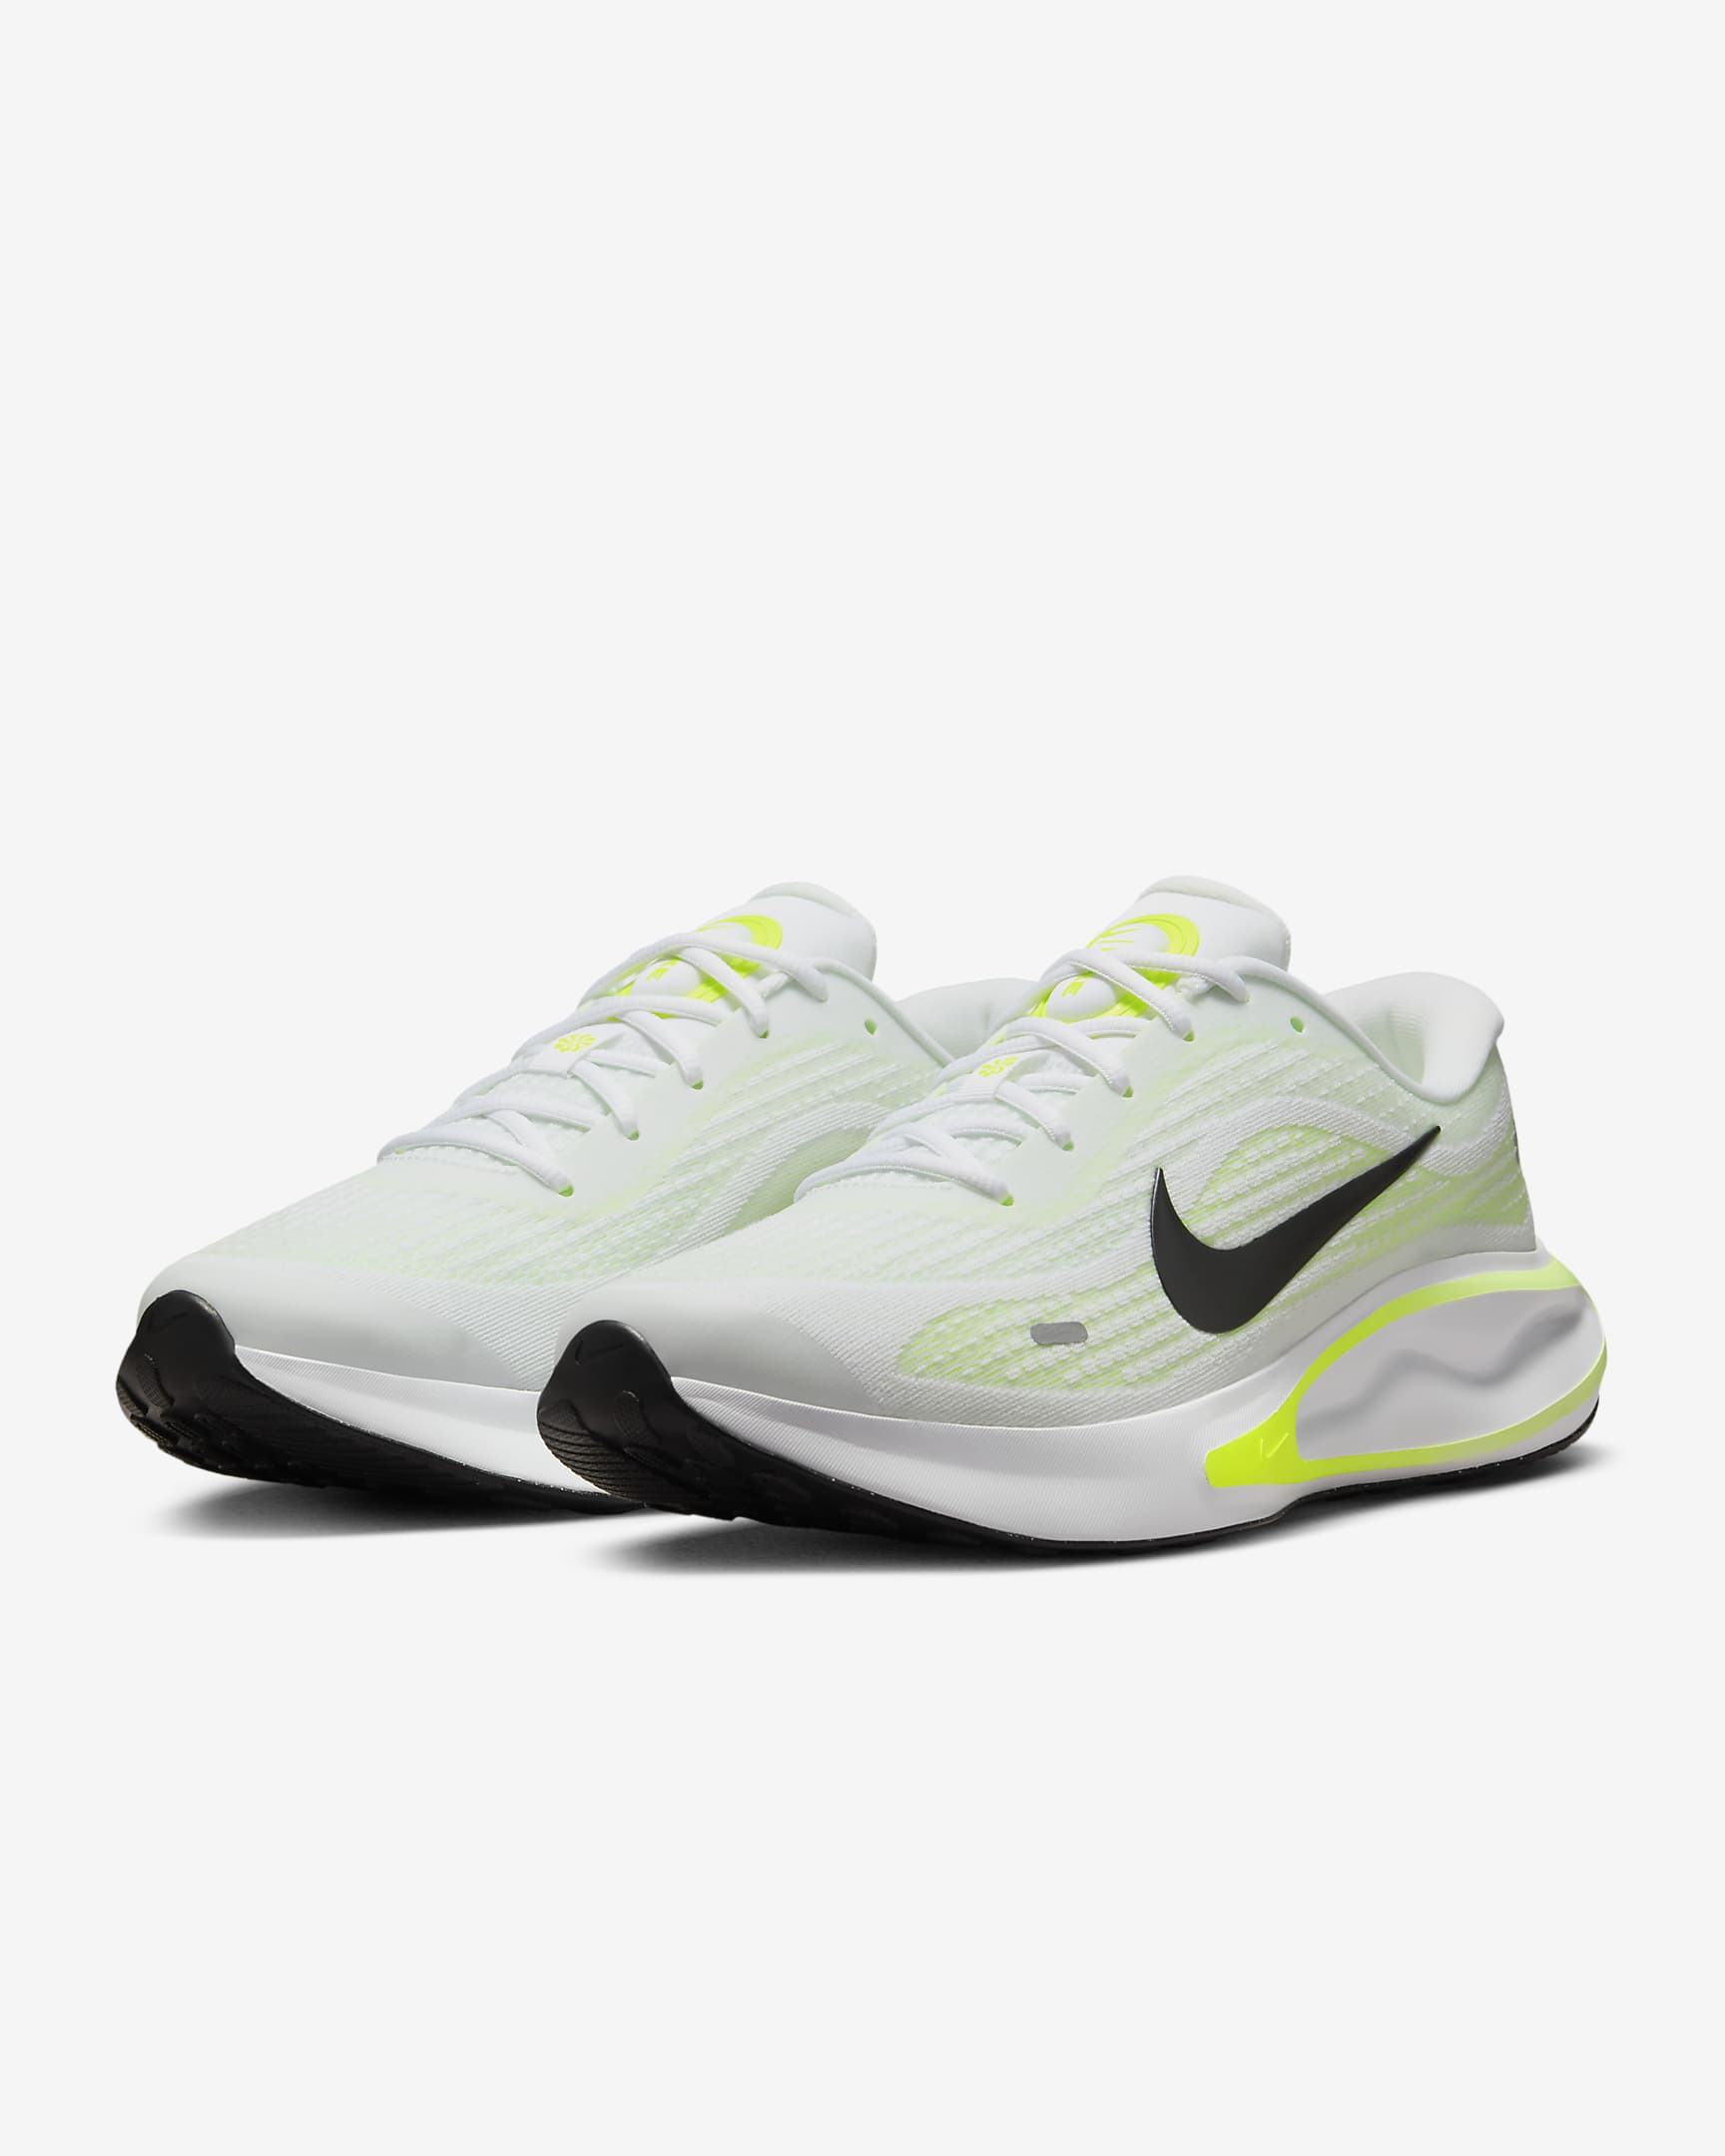 Nike Journey Run Men's Road Running Shoes - Barely Volt/Volt/White/Black